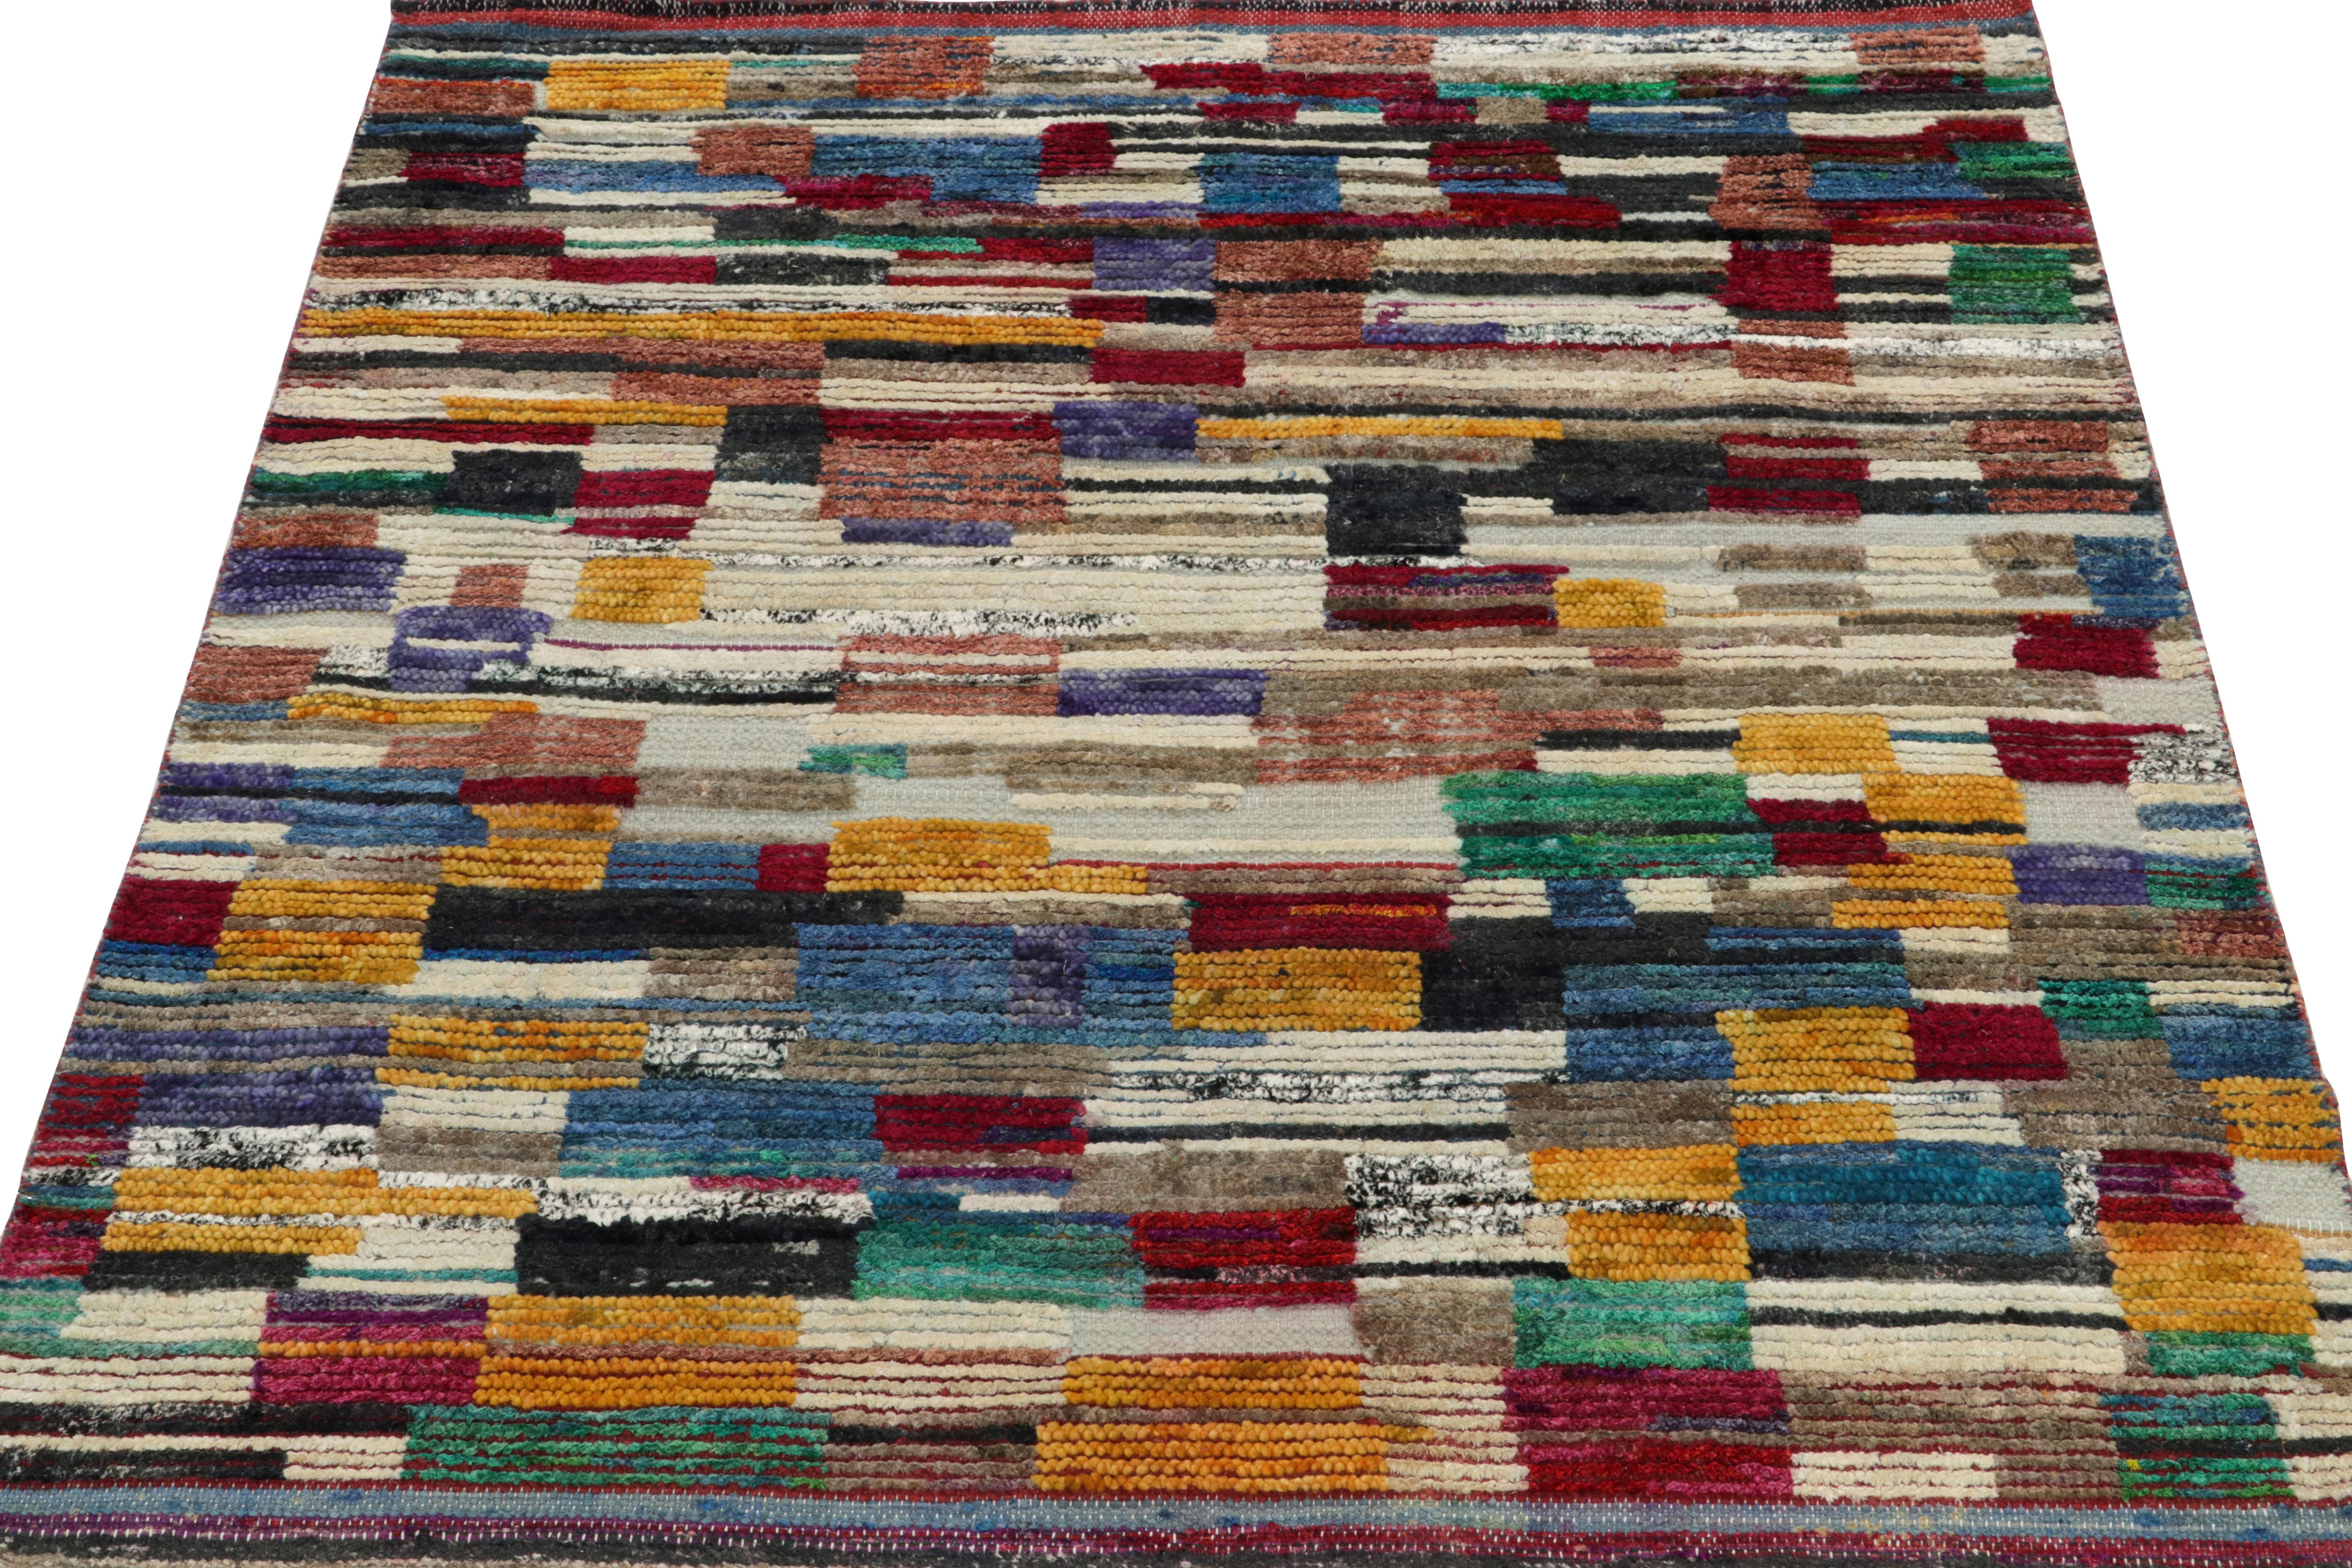 Rug & Kilim ist eine originelle Hommage an das marokkanische Teppichdesign und bietet ein verlockendes Spiel aus verschiedenen Gold-, Scharlachrot-, Blau-, Weiß- und Grüntönen, die nahtlos in eine mehrfarbig gestreifte Bordüre übergehen. Der